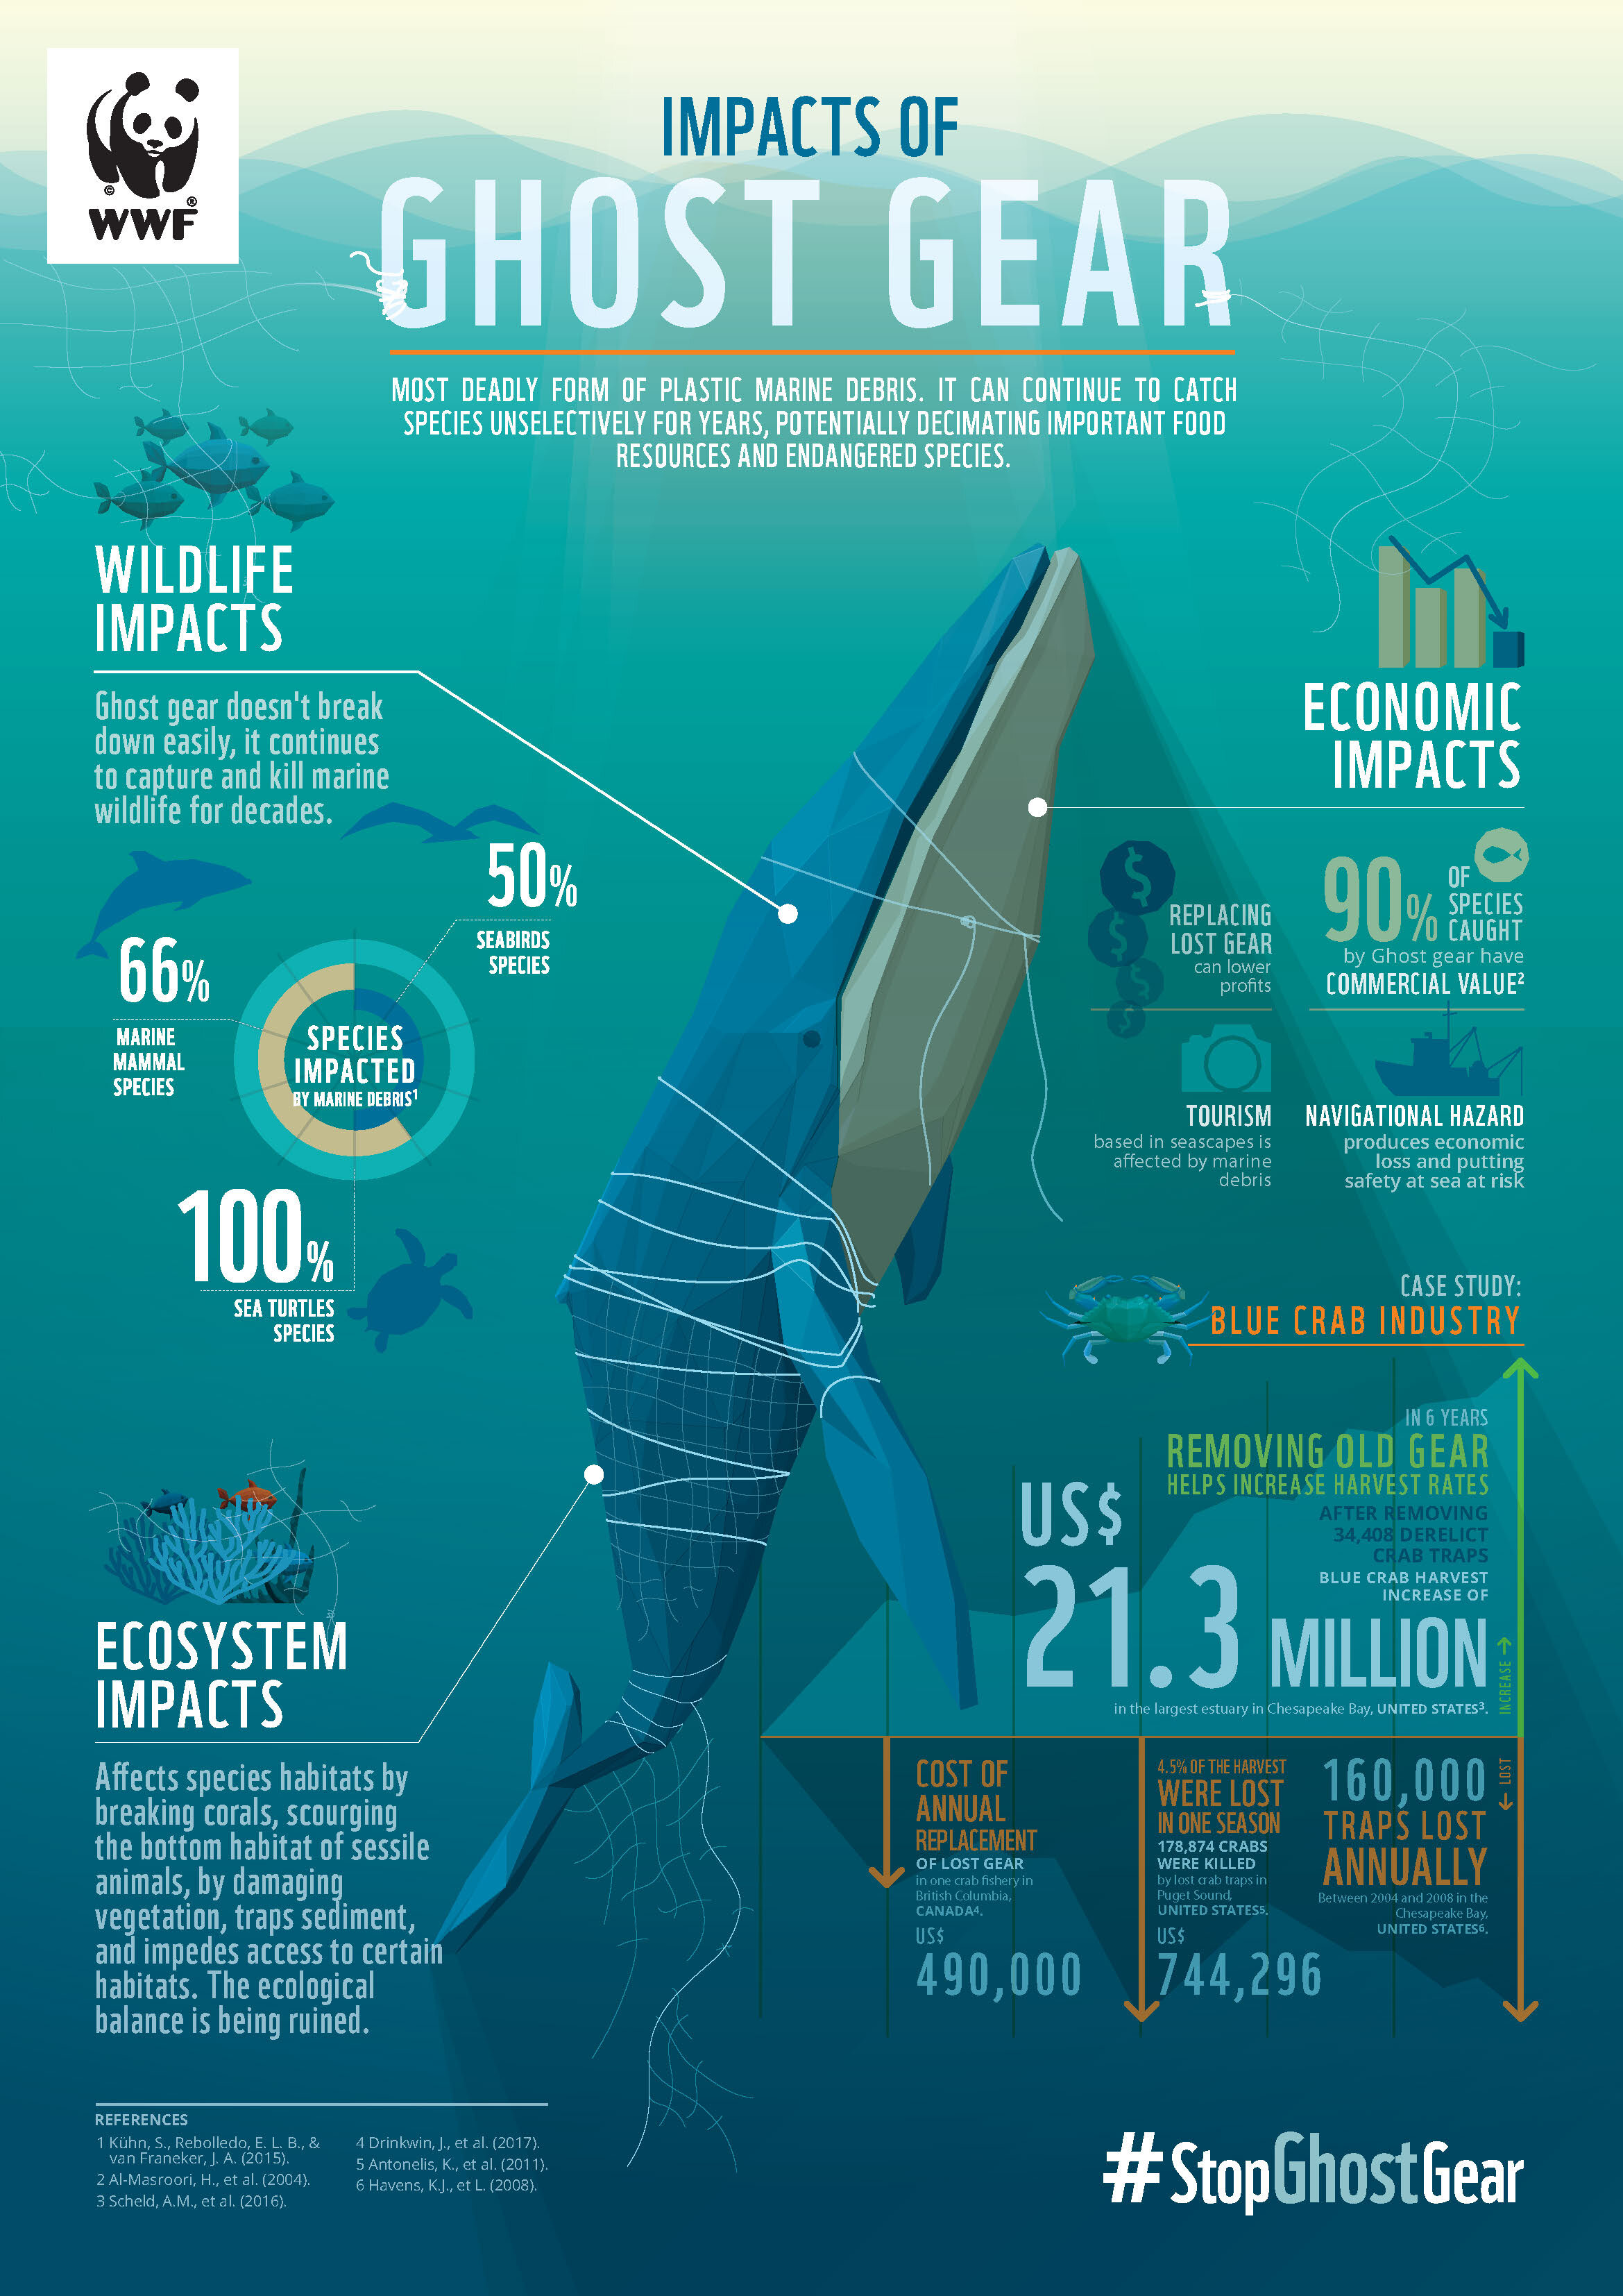 Deze afbeelding legt uit hoe visnetten het ecosysteem van zeedieren kan verstoren